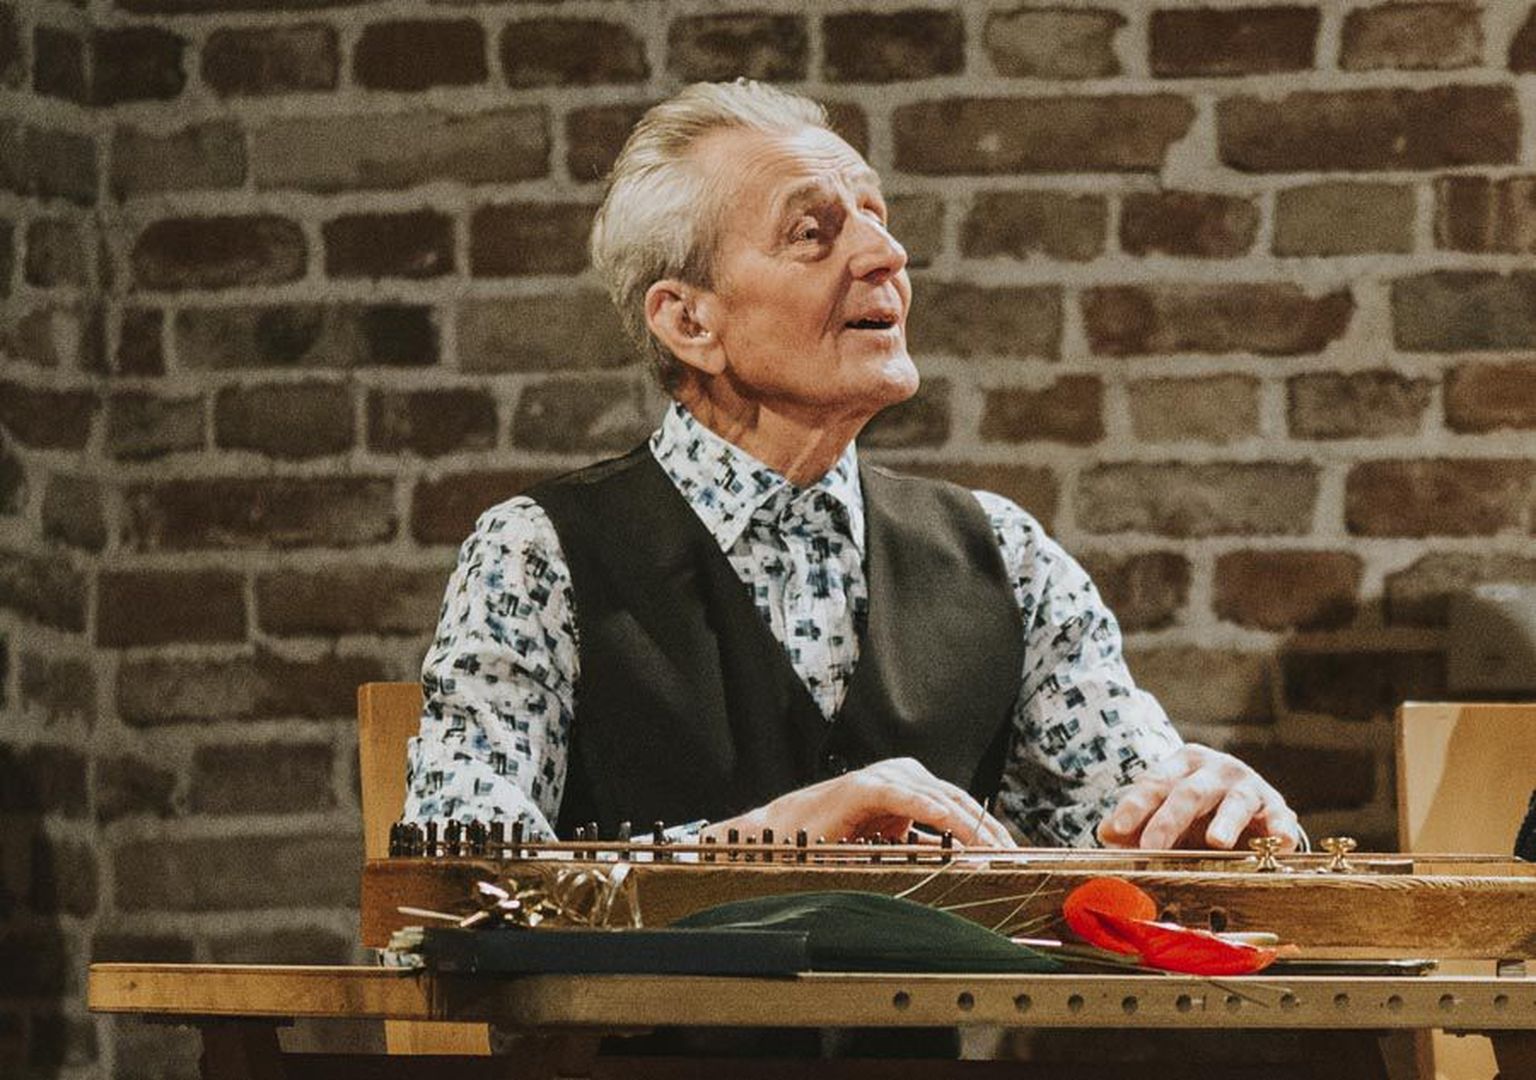 Pühapäeval rõõmustab tuntud Karksi-Nuia kandlemängija  Heino Sõna koos sõpradega musitseerides eakat publikut Viljandis pärimusmuusika aidas.